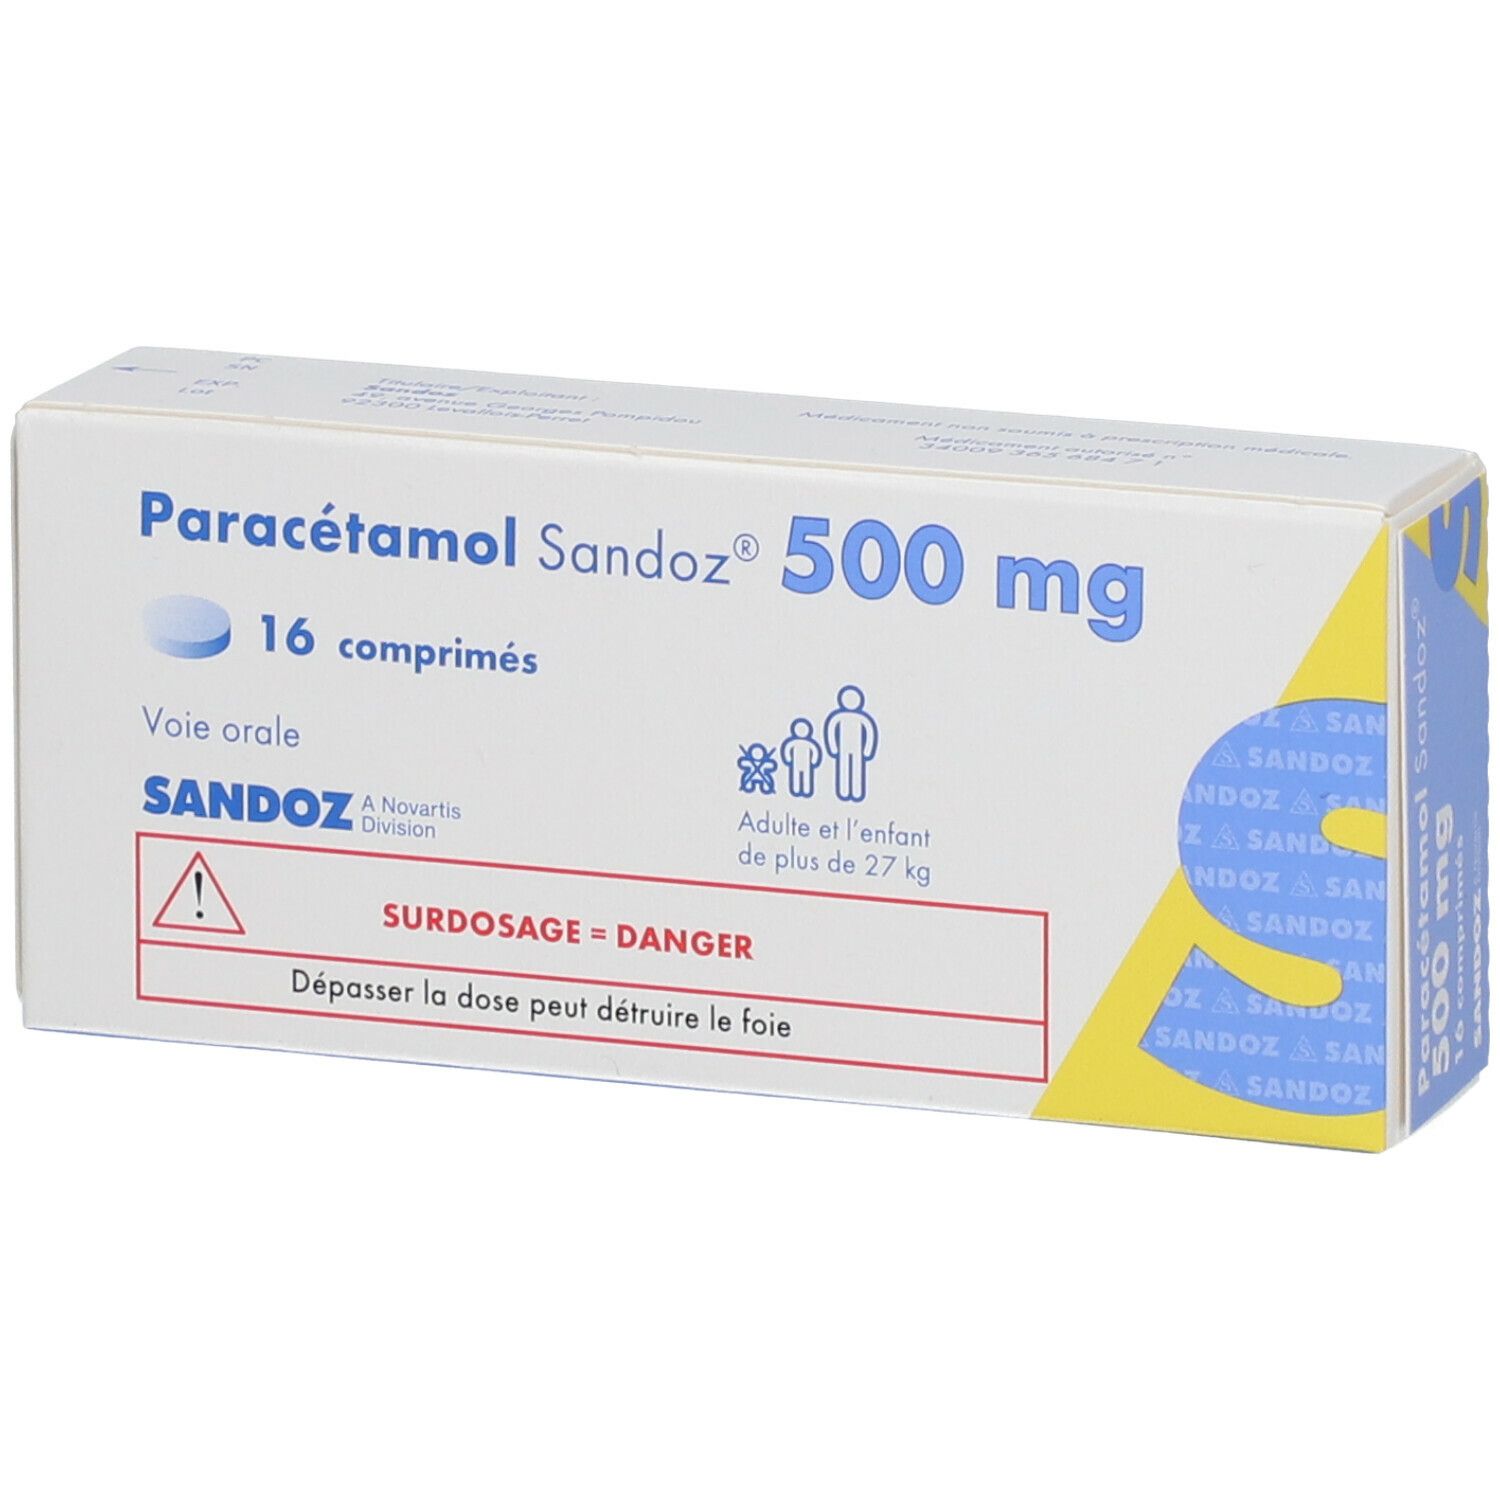 Paracétamol Sandoz® 500 mg